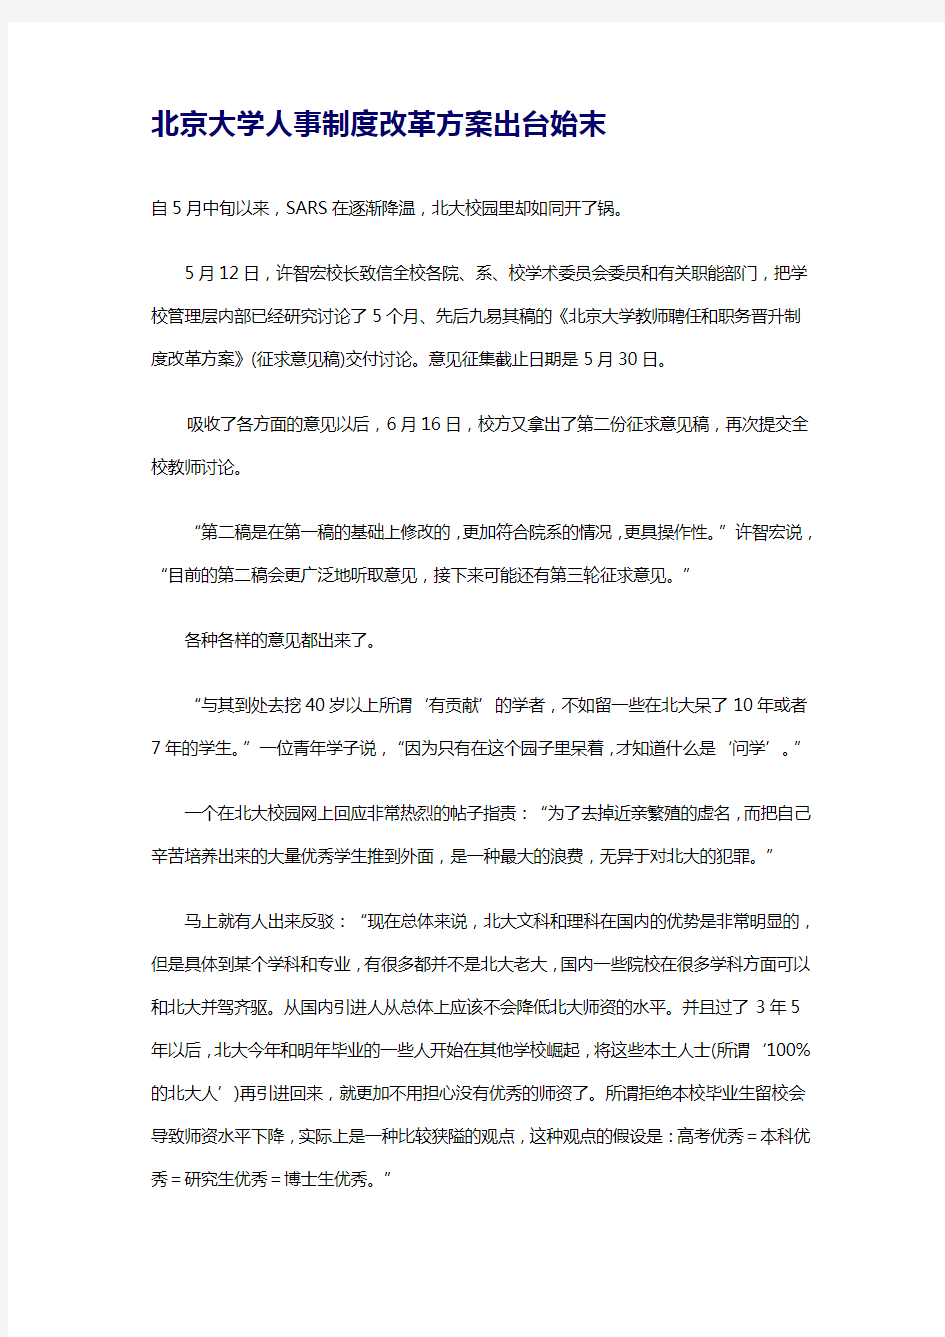 北京大学人事制度改革方案出台始末